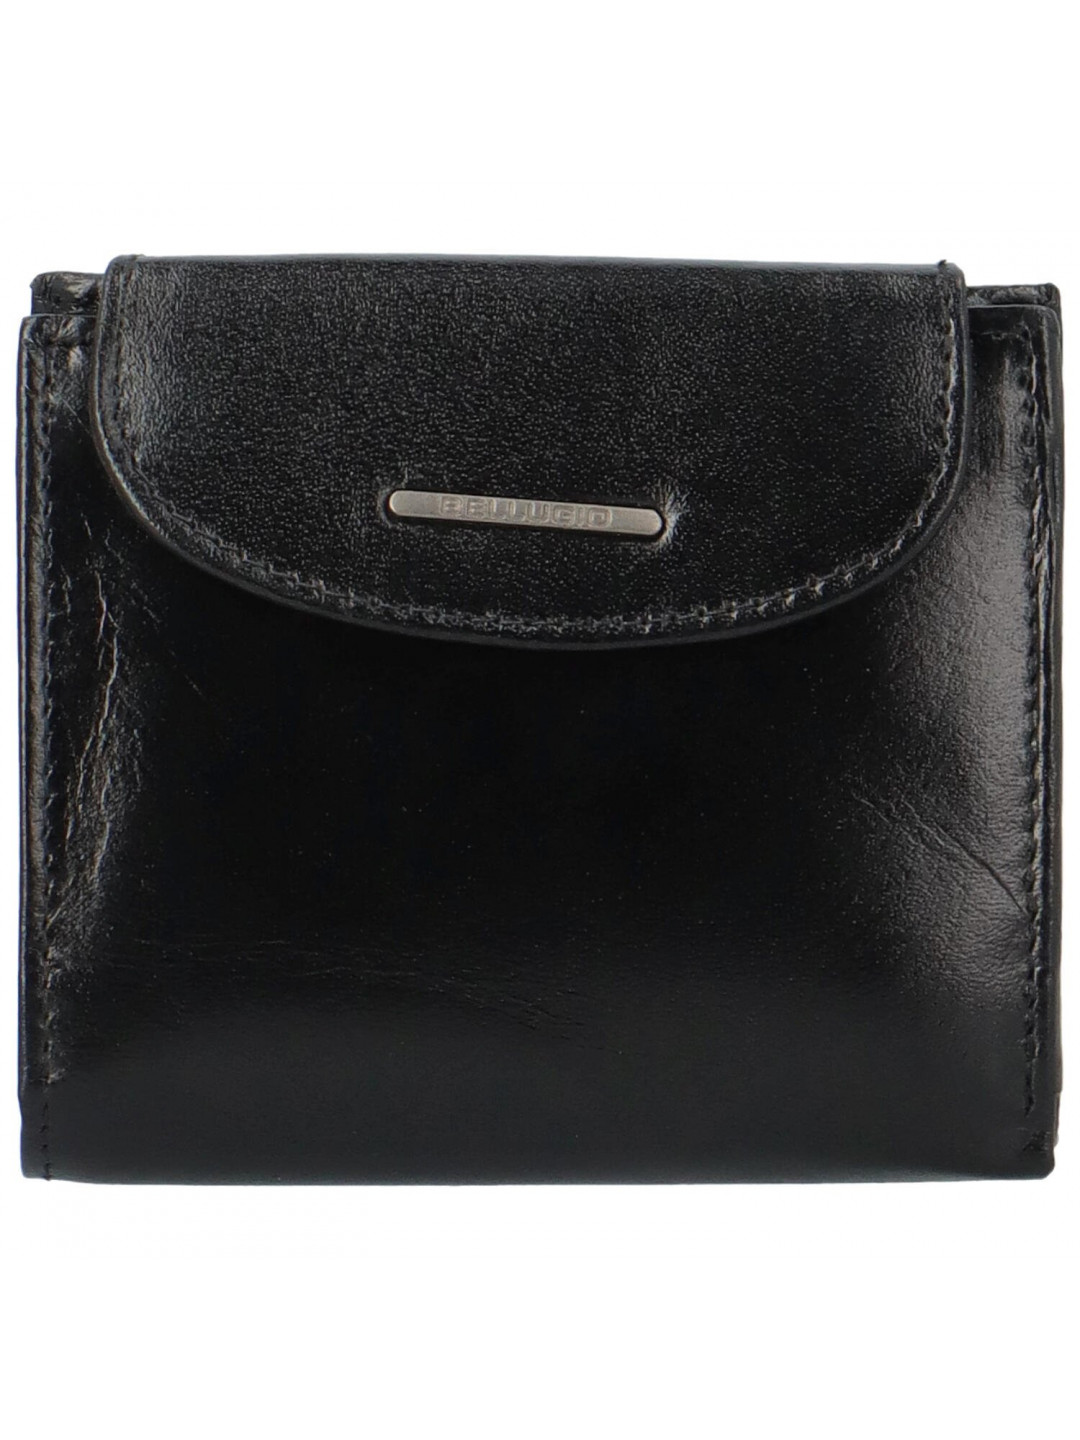 Dámská kožená peněženka černá – Bellugio Werisia